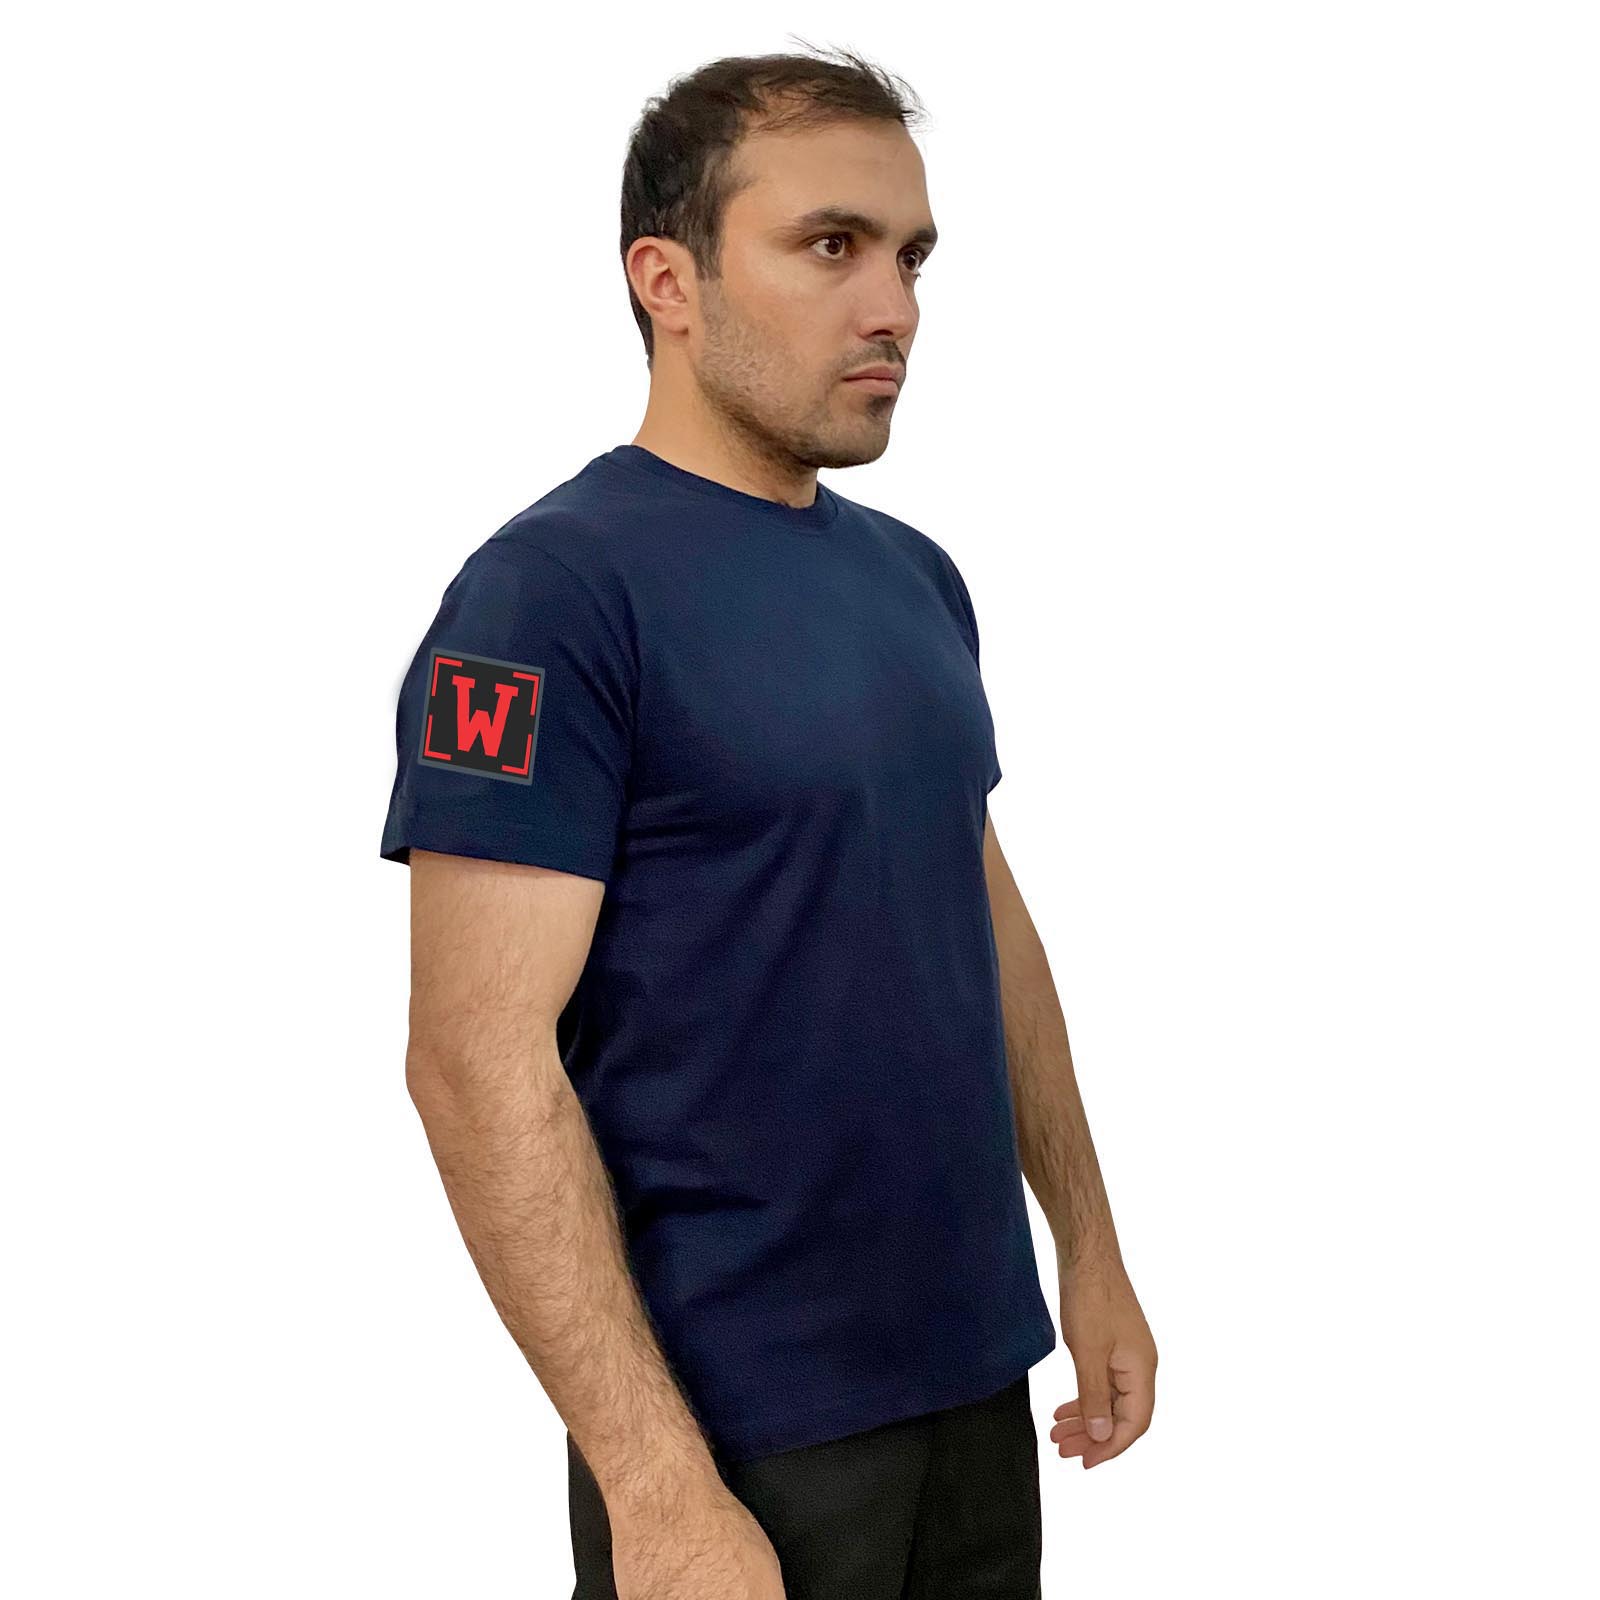 Купить синюю оригинальную футболку с термотрансфером W онлайн